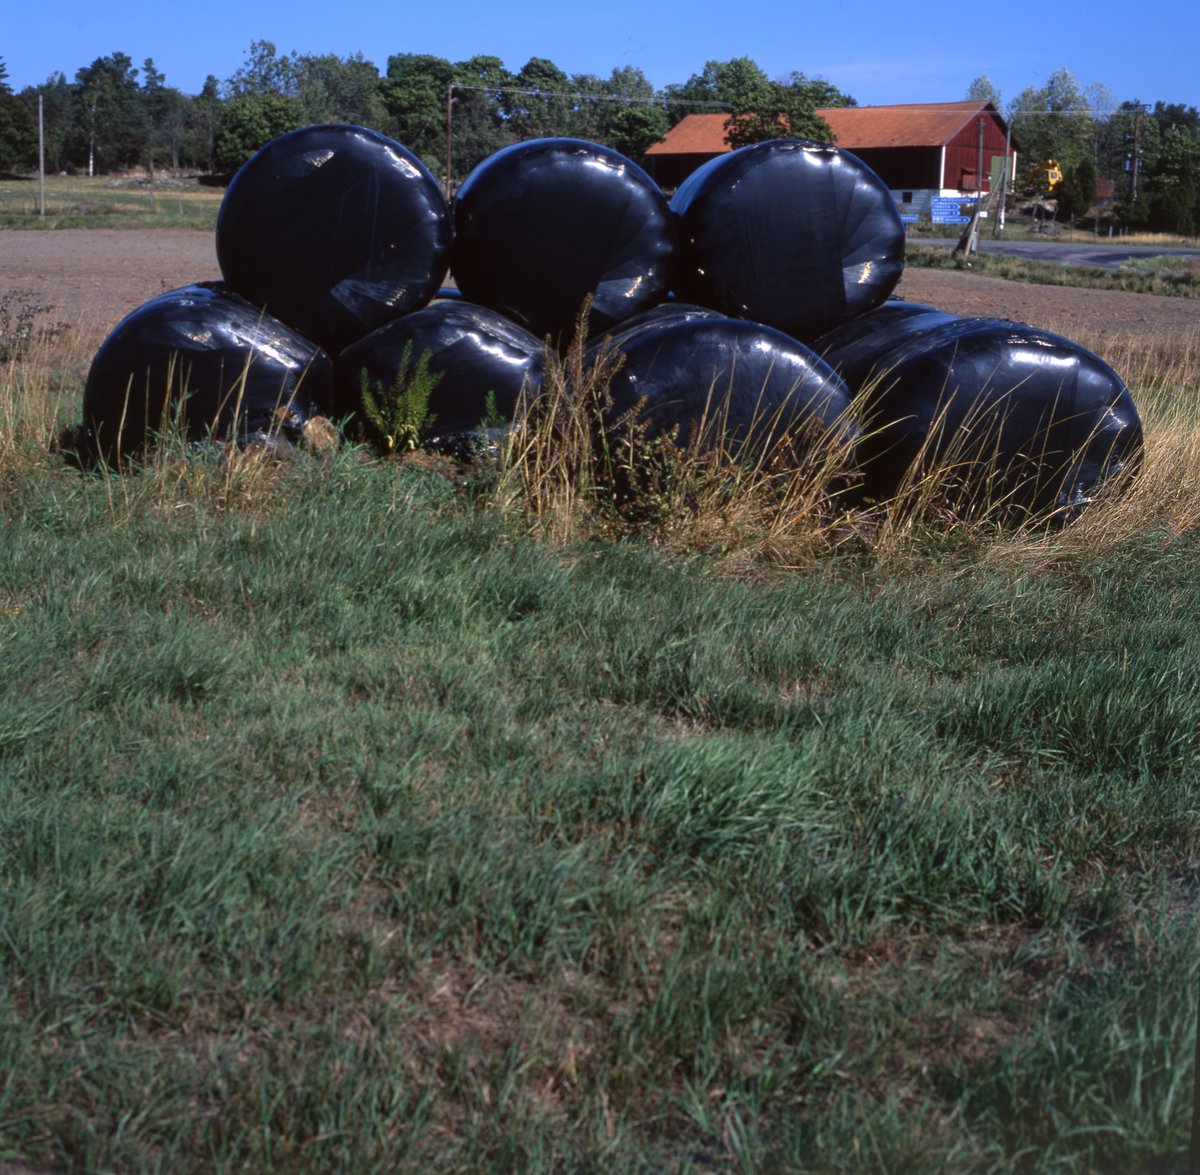 Ensilagebalar i svart plast placerade i gräset. I bakgrrunden syns en lada och skog.